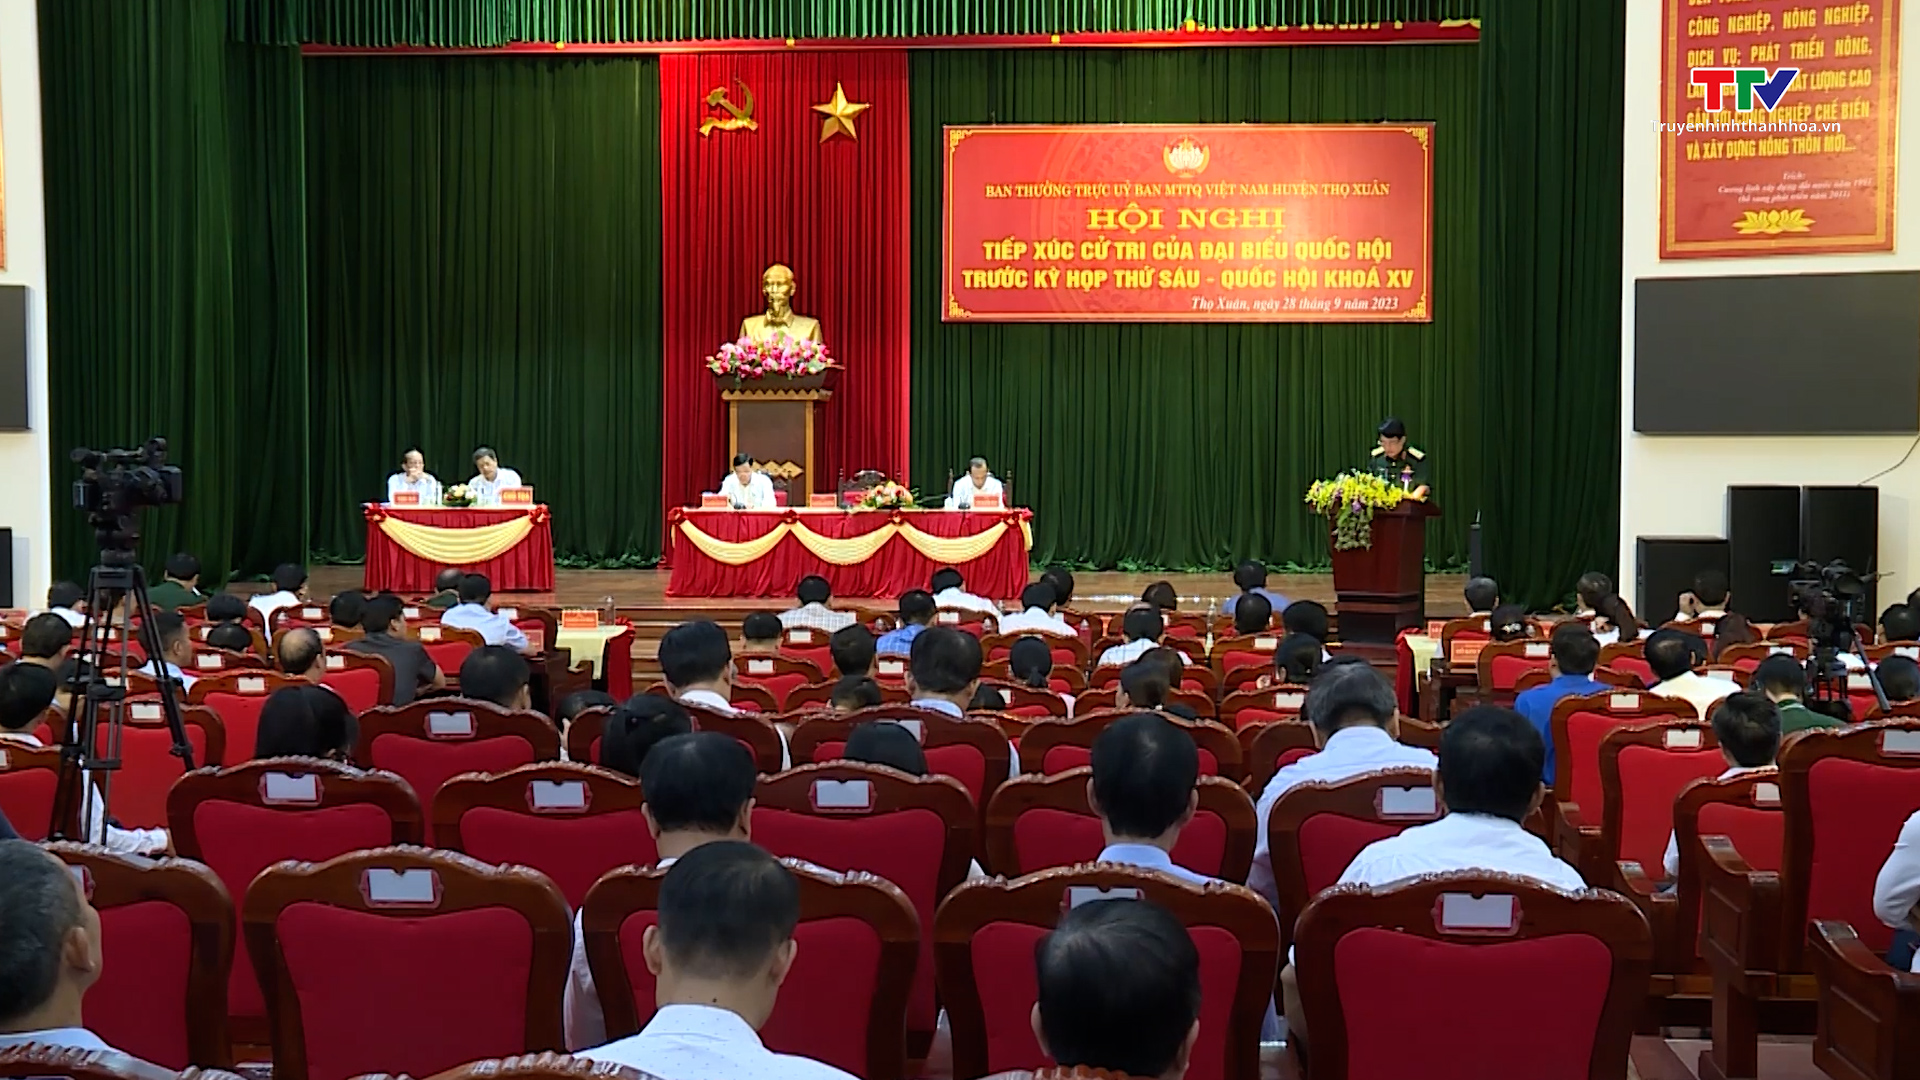 Đại tướng Lương Cường, Ủy viên Bộ Chính trị, Chủ nhiệm Tổng cục Chính trị Quân đội Nhân dân Việt Nam tiếp xúc cử tri tại Thanh Hóa - Ảnh 9.